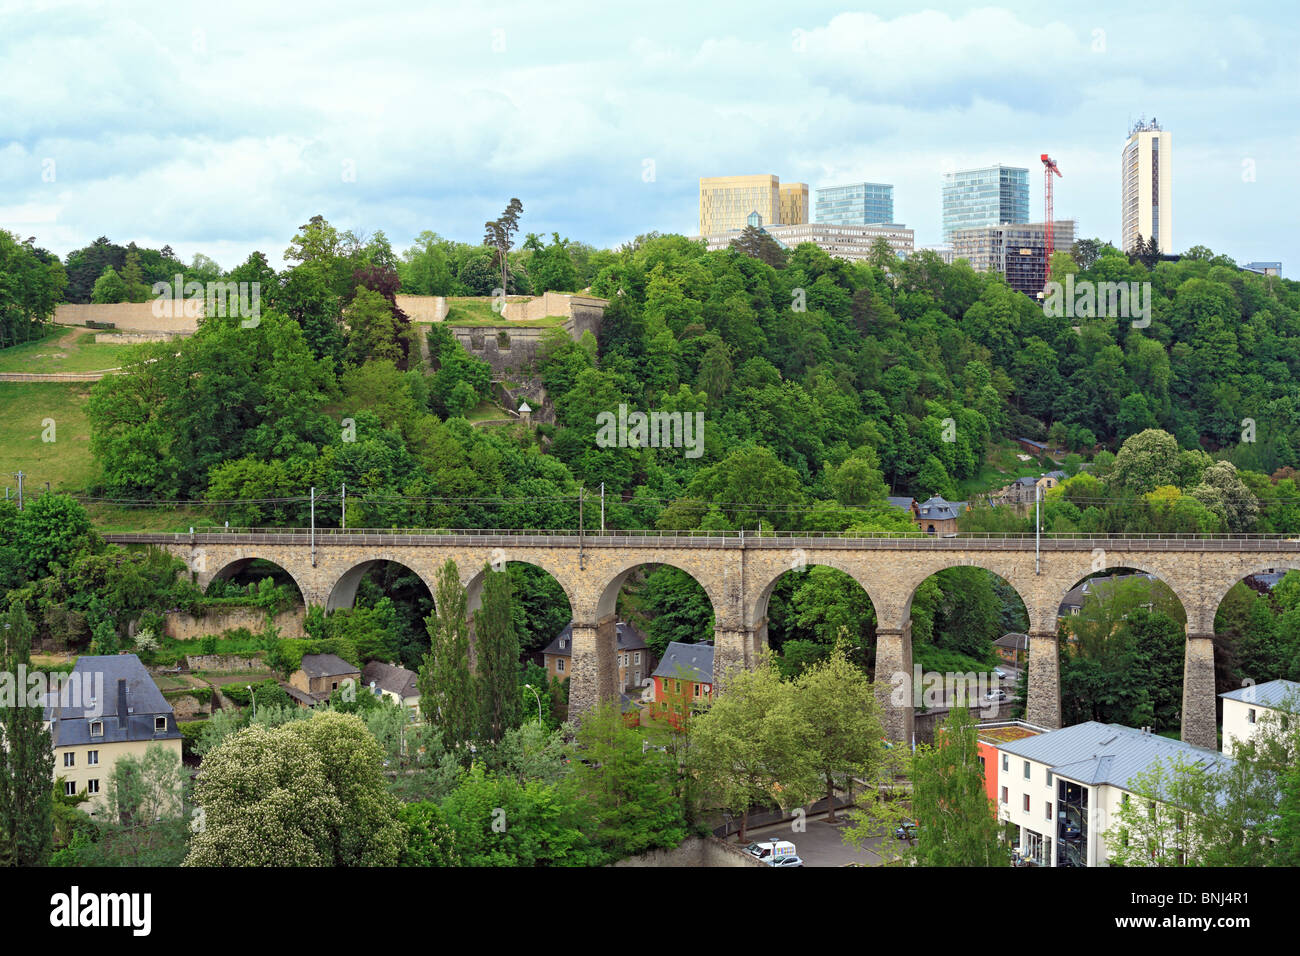 Luxemburg-Stadt Westeuropa Europa Europäische Tourismus Reisen tagsüber Stadt Städte Ansicht von oben im Freien im freien Haus Häuser Stockfoto